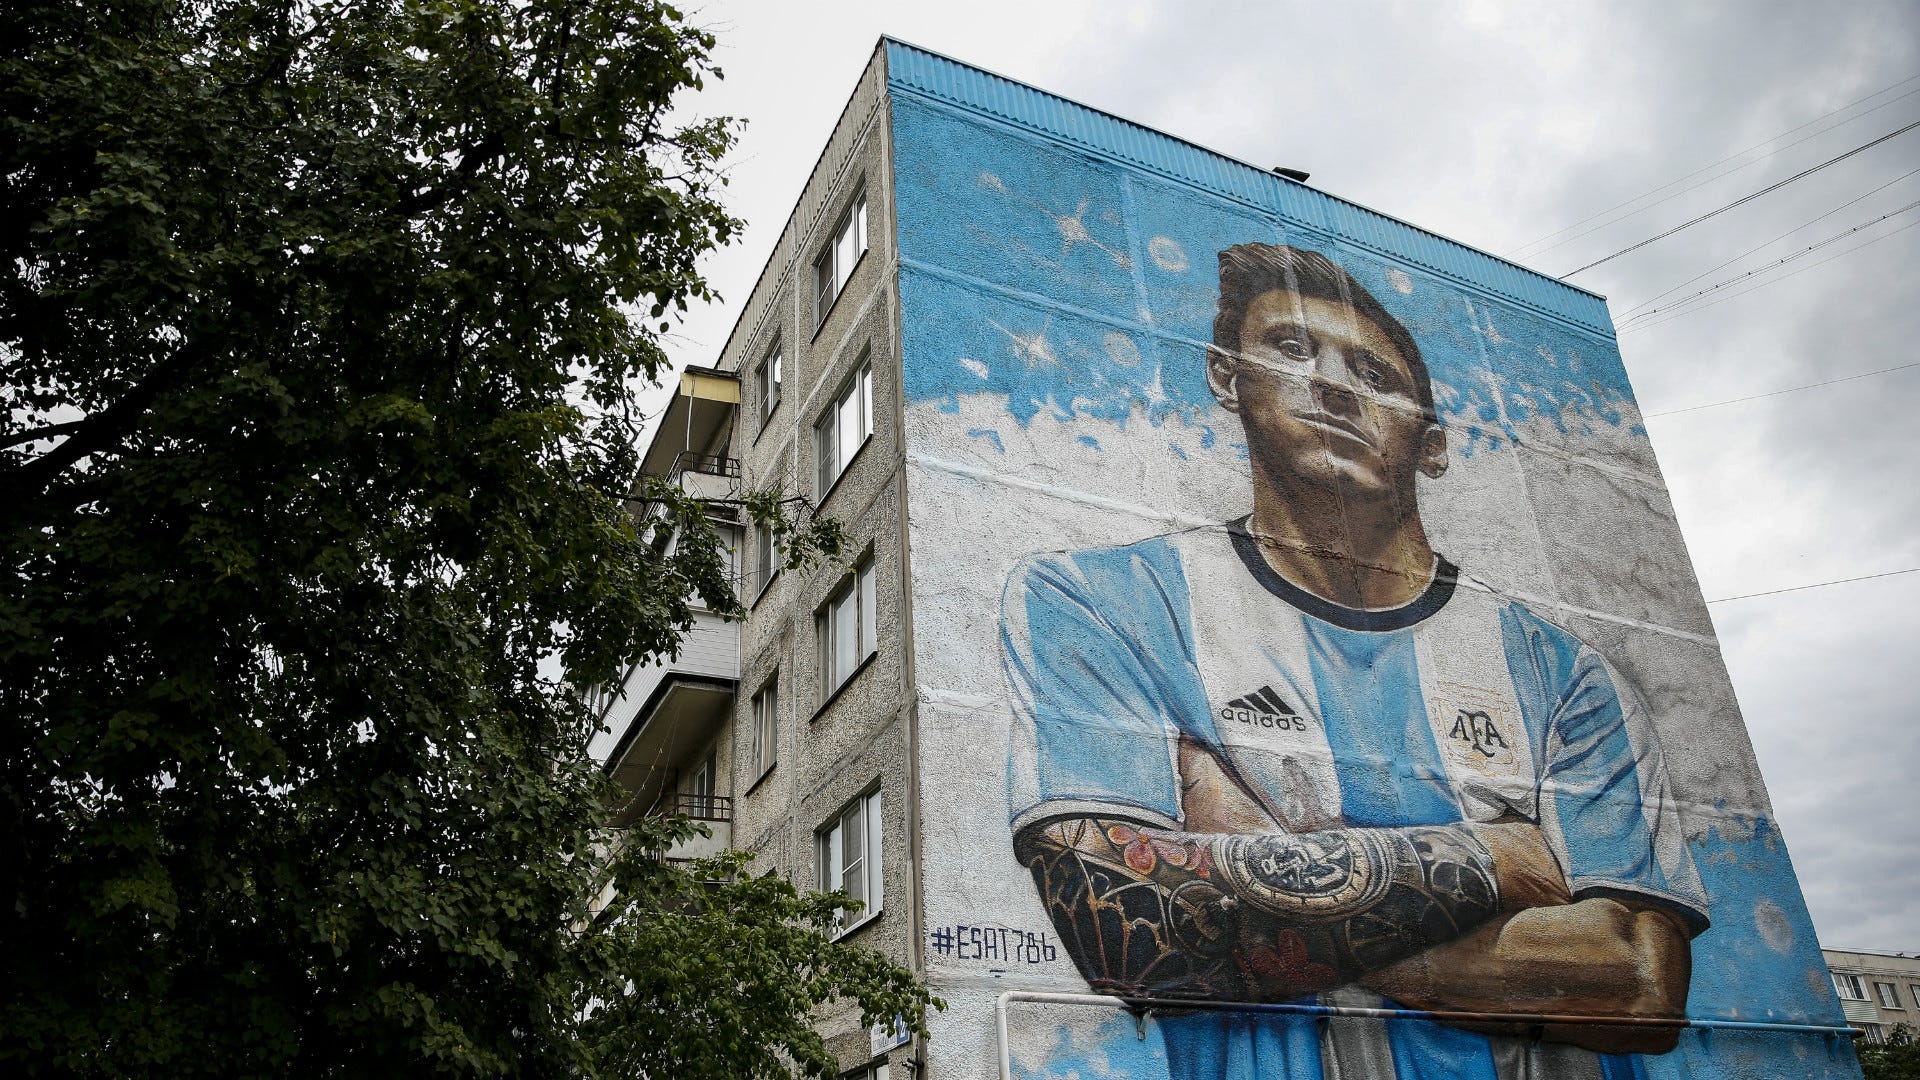 Lionel Messi - một chân dung nghệ thuật tuyệt đẹp, tương truyền đã được vẽ bởi một họa sĩ tài ba. Hãy xem qua tấm ảnh nhỏ này để có một cái nhìn sâu sắc về cầu thủ xuất sắc này và tình yêu của người hâm mộ dành cho anh ấy.